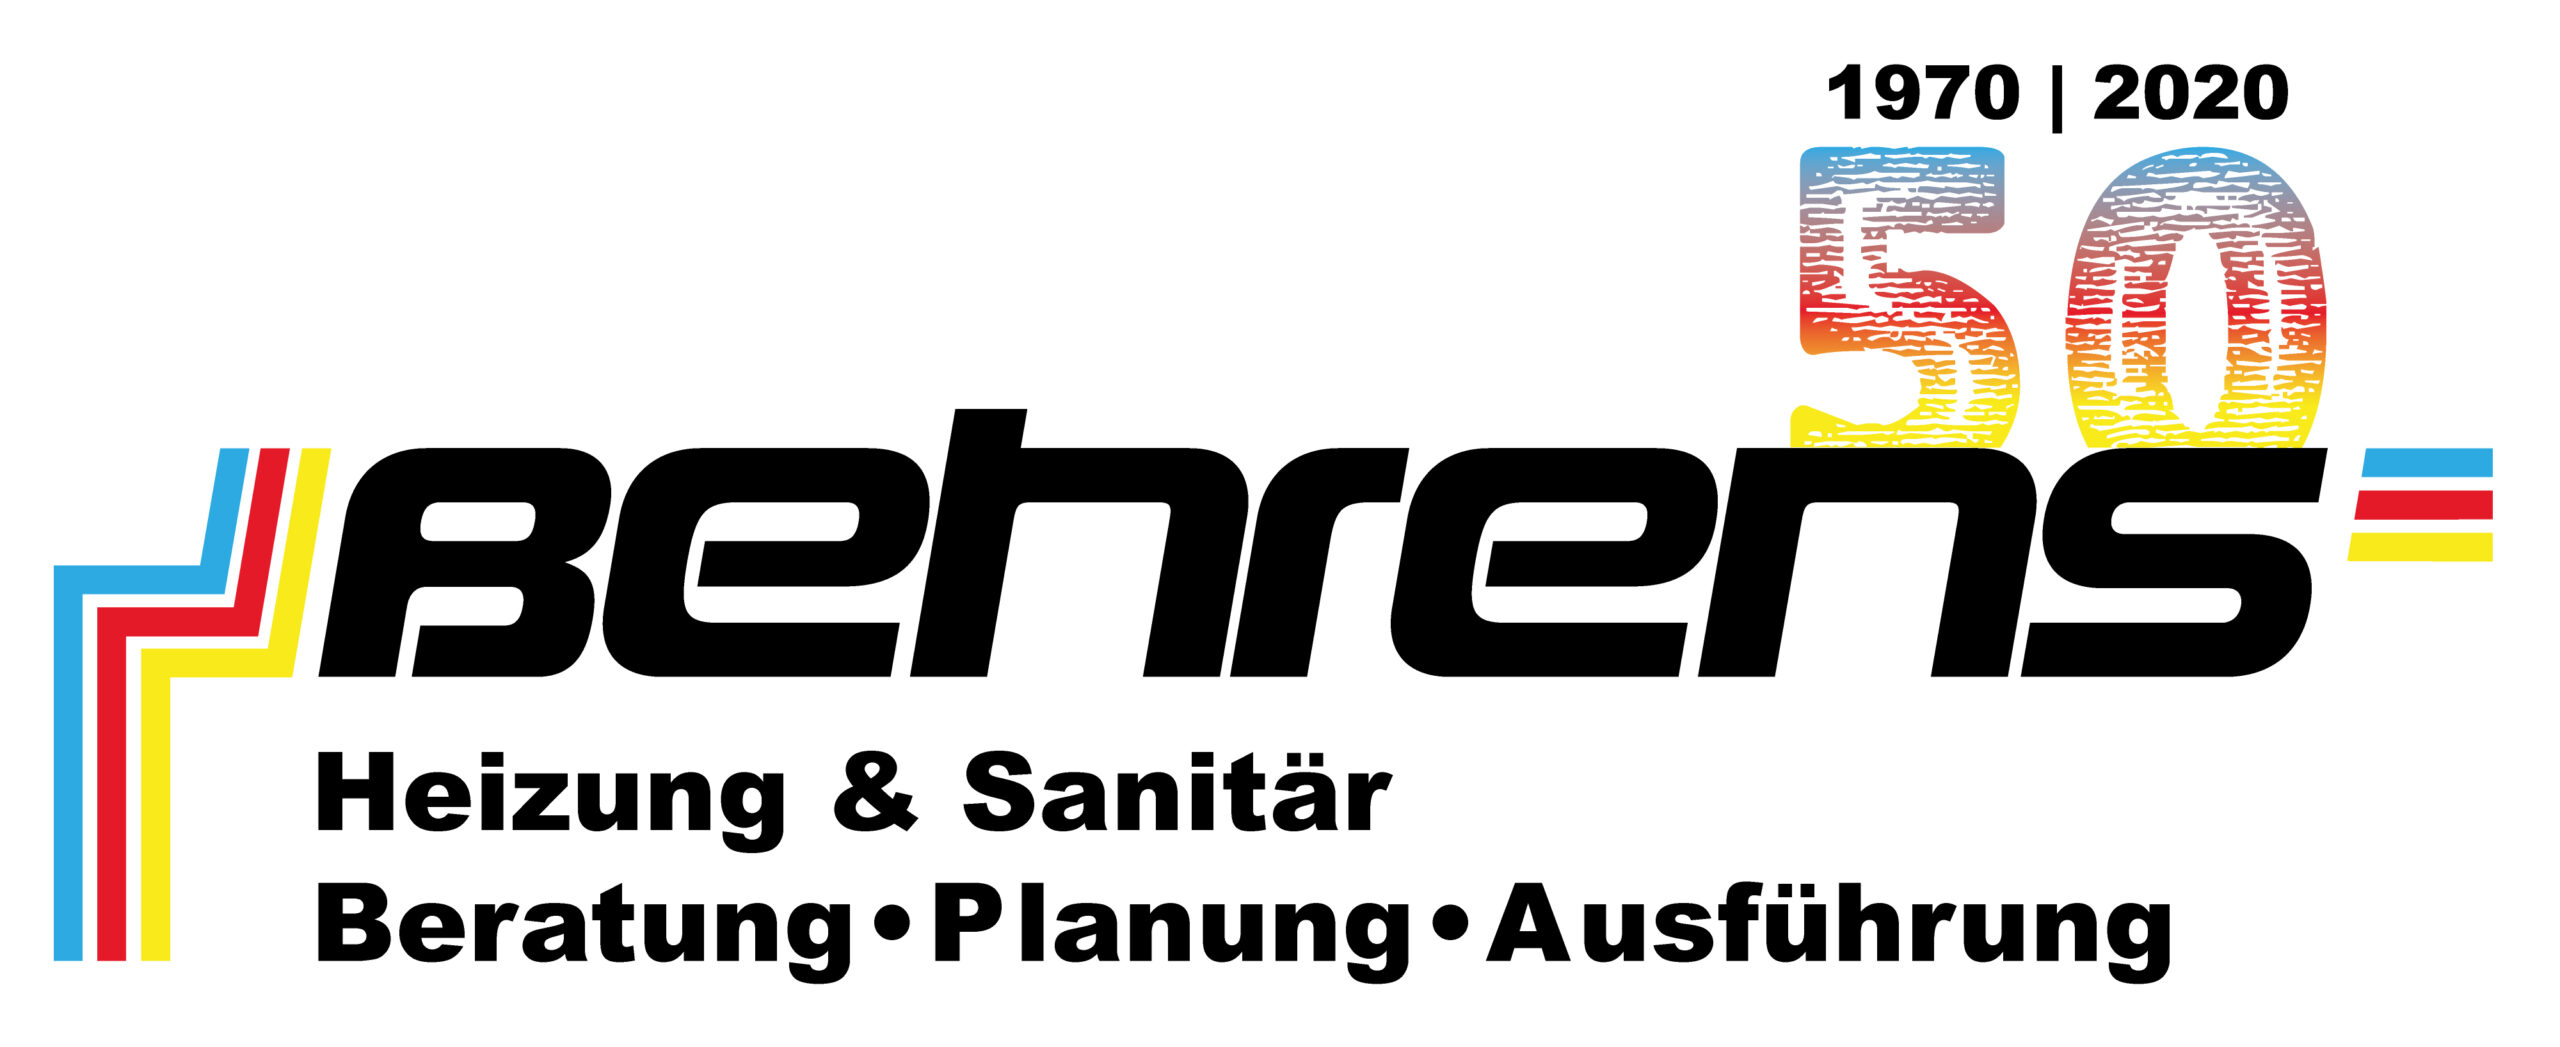 Peter Behrens GmbH